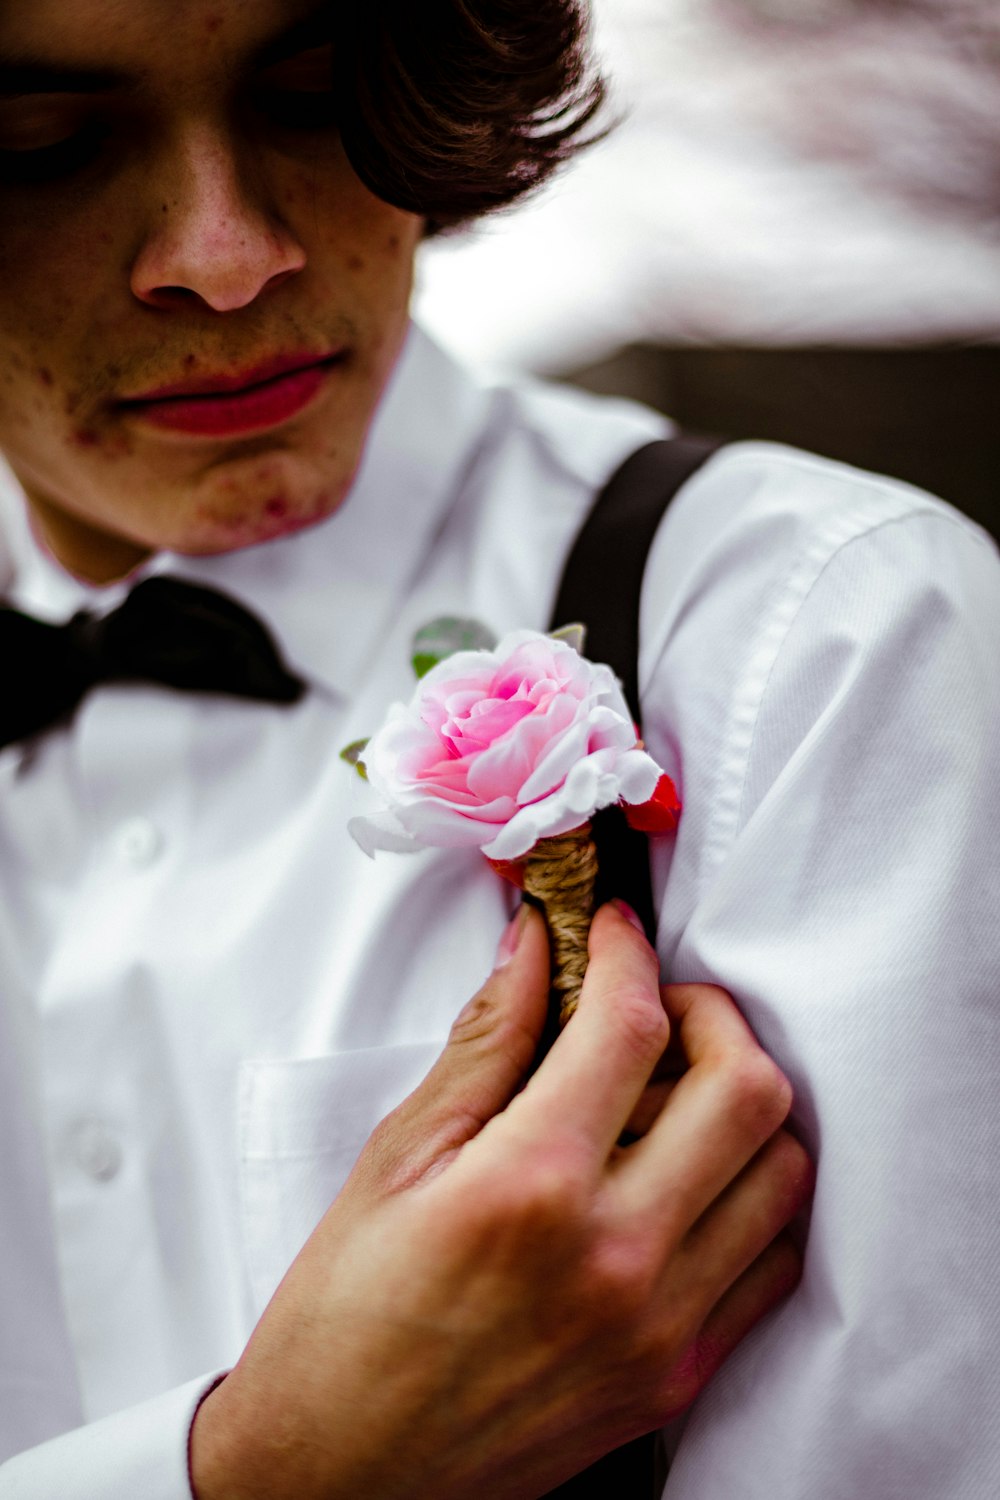 homme en chemise blanche avec noeud papillon noir tenant rose rose